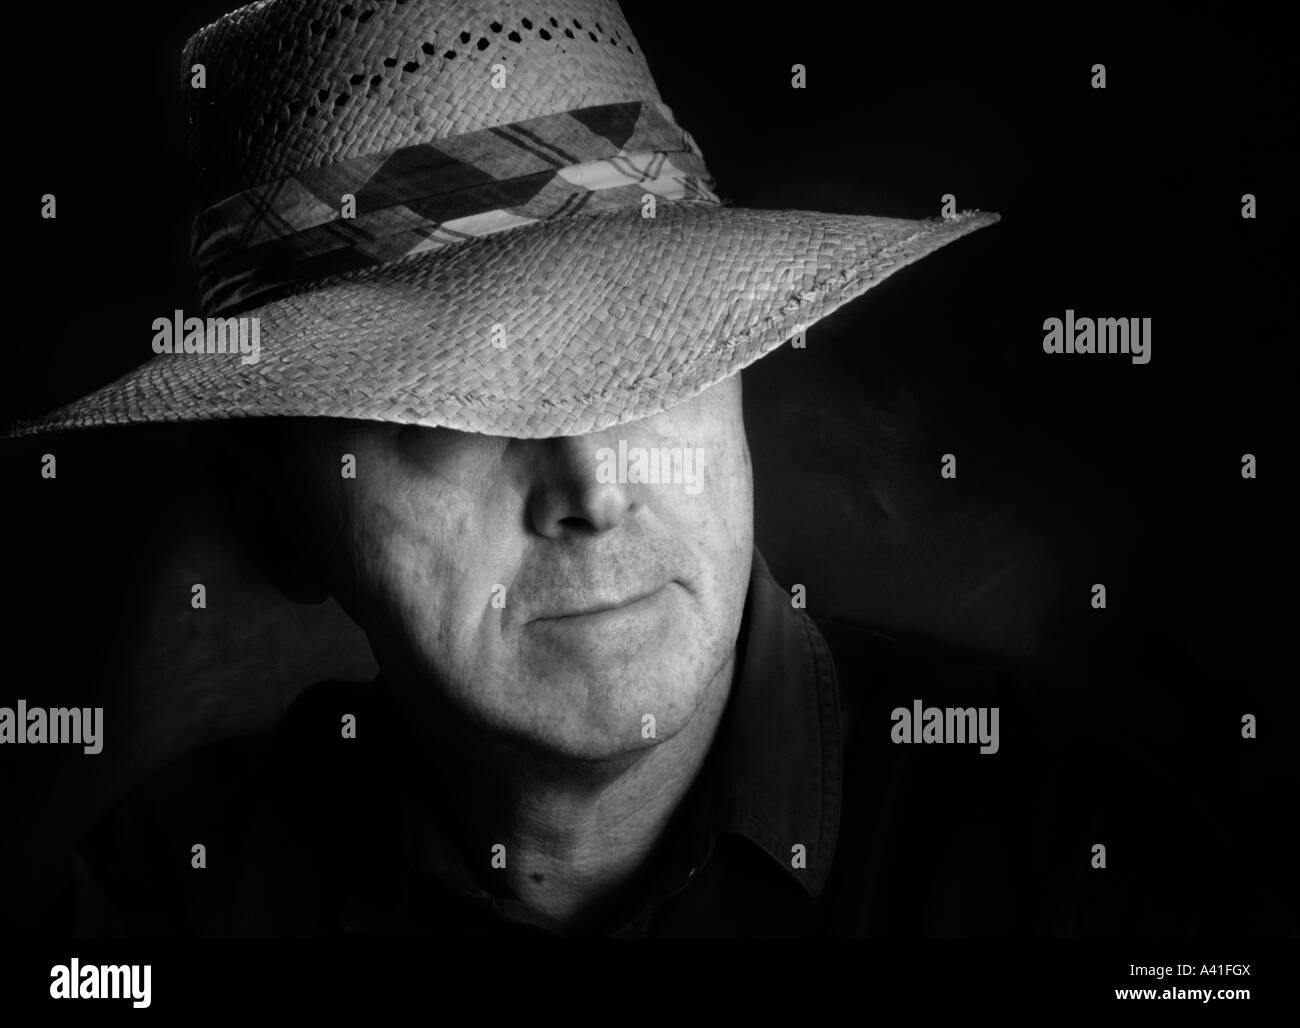 Porträt eines Mannes in einem Strohhut, der einen karierten Hutband hat.  Schwarz / weiß-version Stockfoto